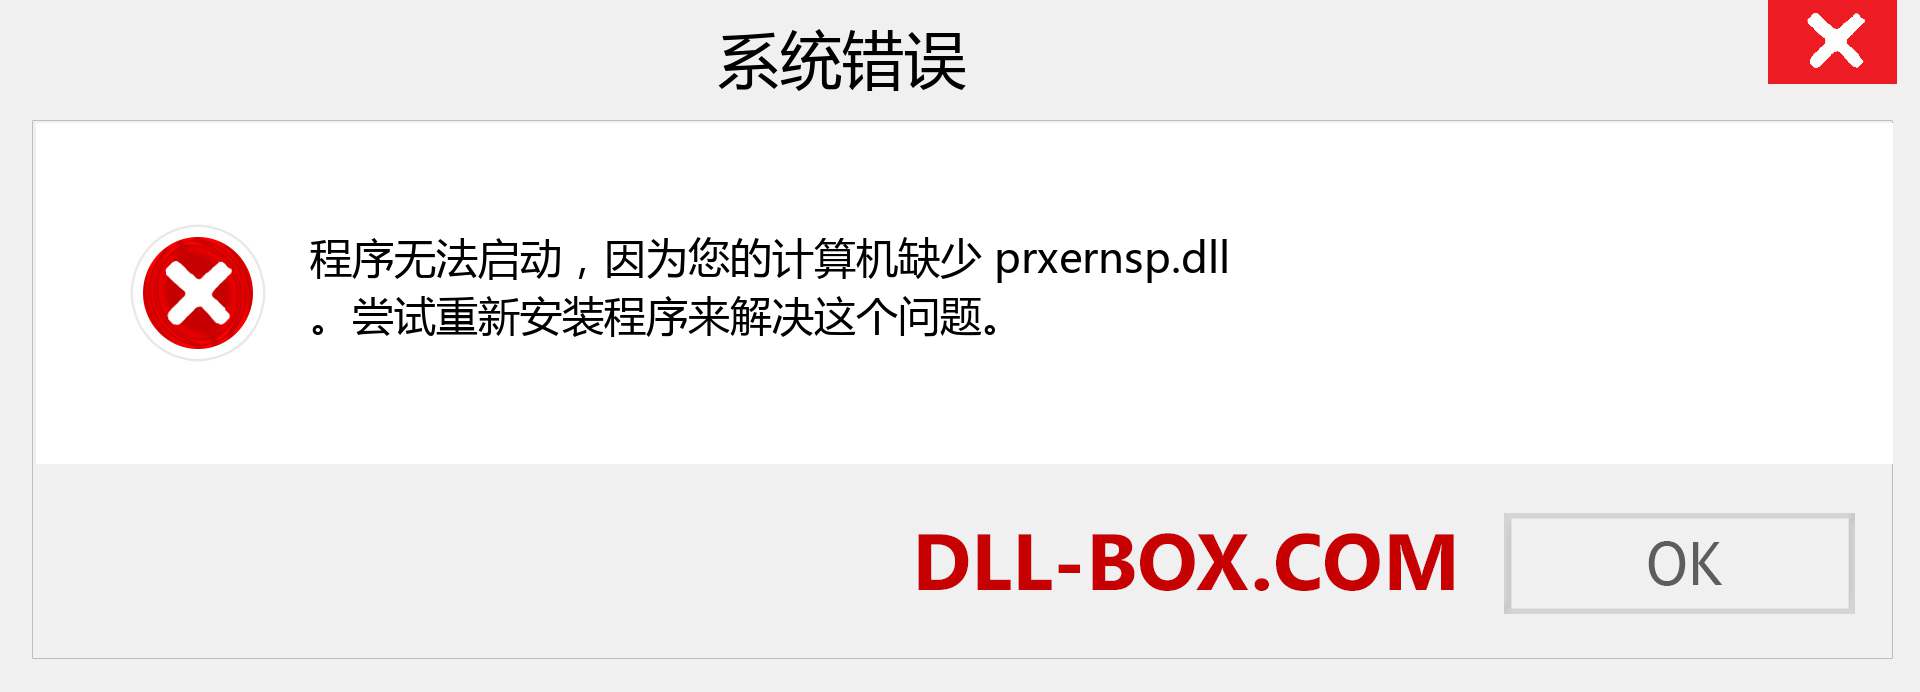 prxernsp.dll 文件丢失？。 适用于 Windows 7、8、10 的下载 - 修复 Windows、照片、图像上的 prxernsp dll 丢失错误